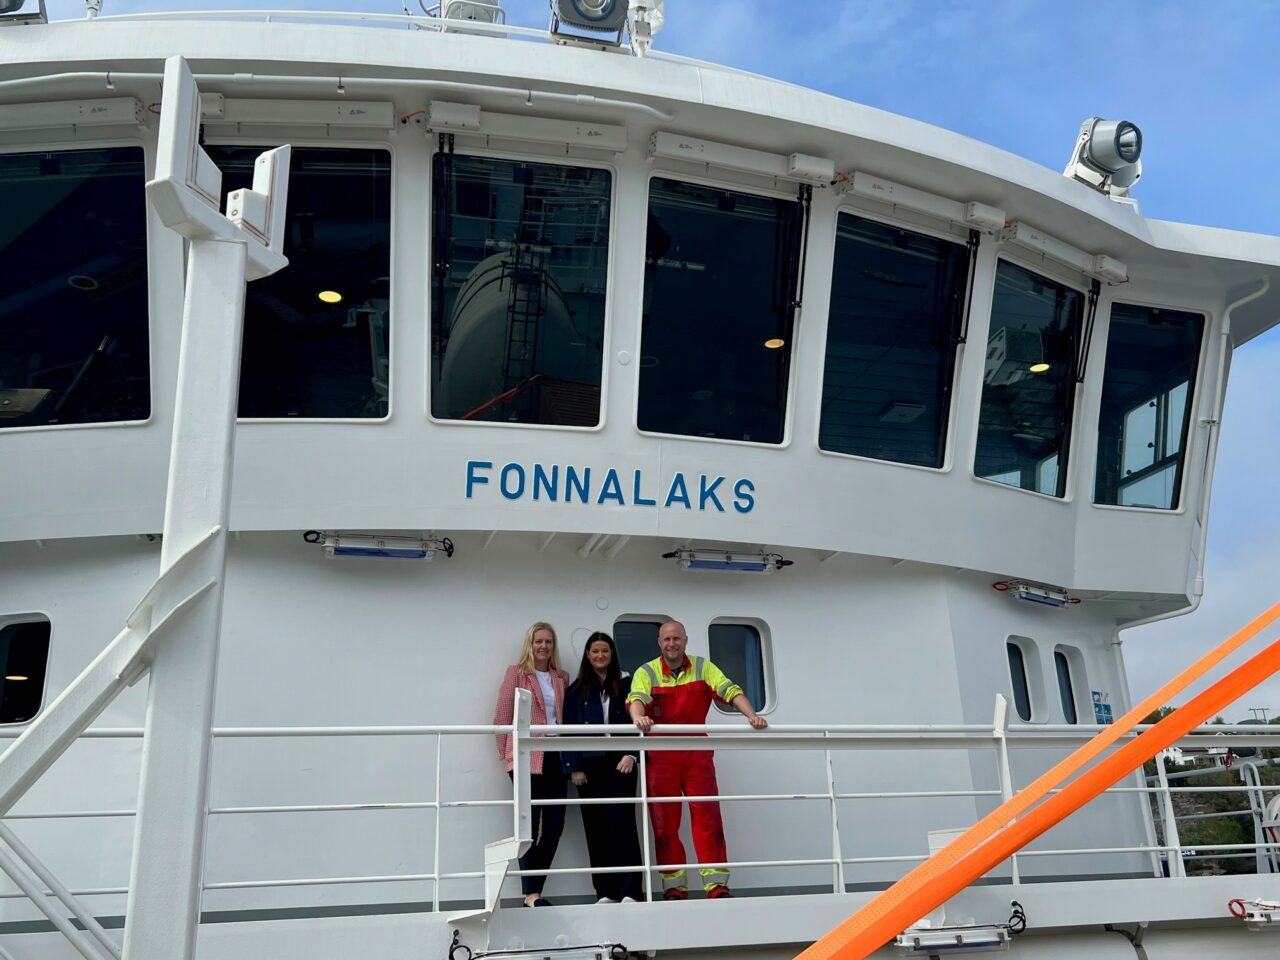 Tre mennesker står om bord et skip og smiler inn i kamera. Foto